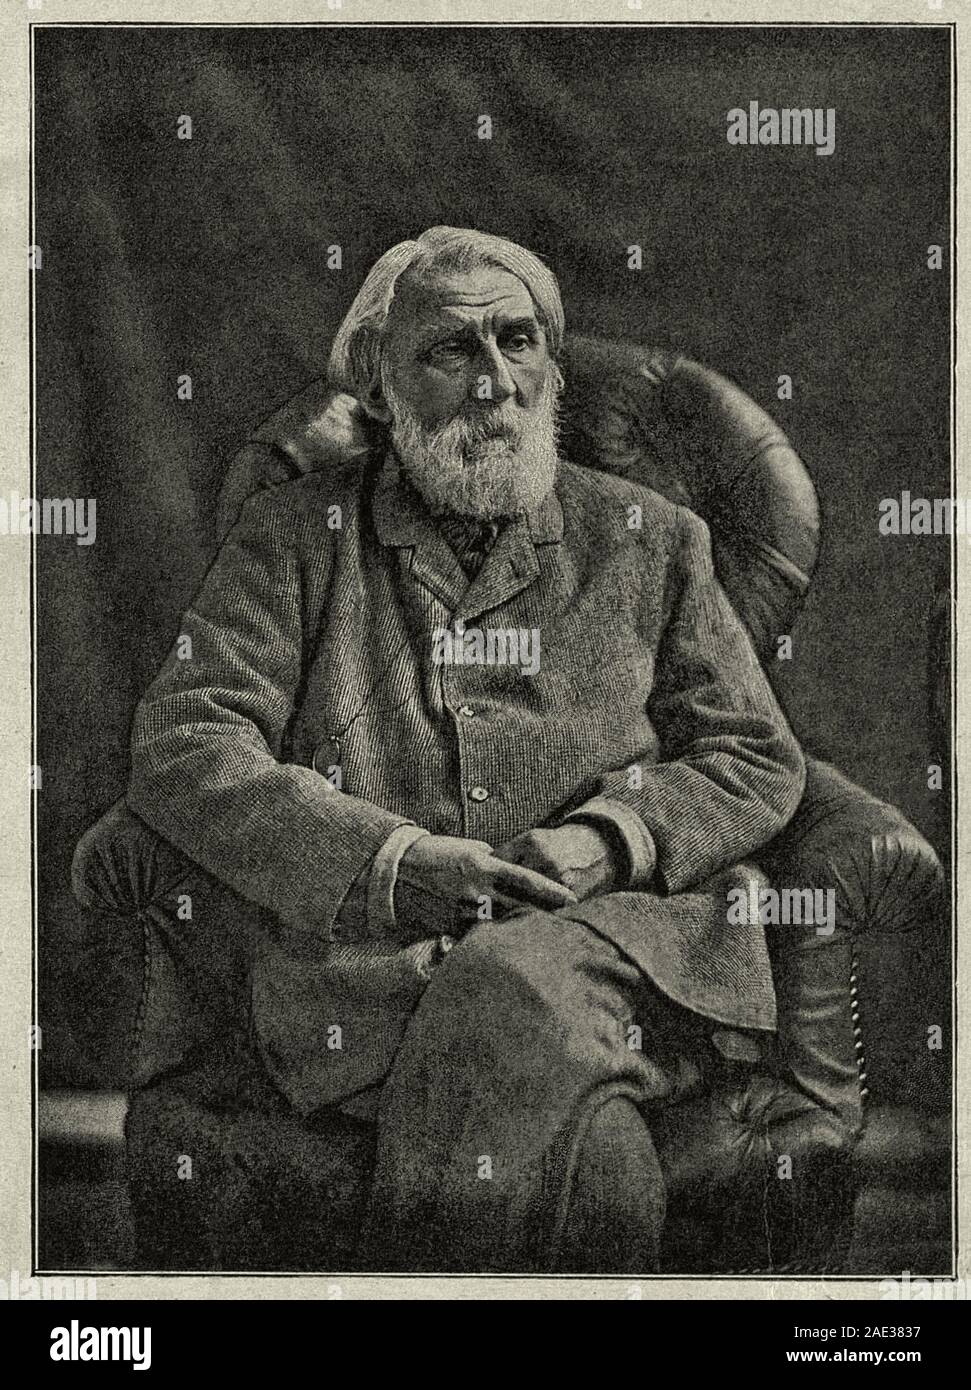 Foto von Iwan Sergejewitsch Turgenjew sechs Monate vor seinem Tod. Iwan Sergejewitsch Turgenjew (1818 - 1883) war ein russischer Schriftsteller, Short story writer, p Stockfoto